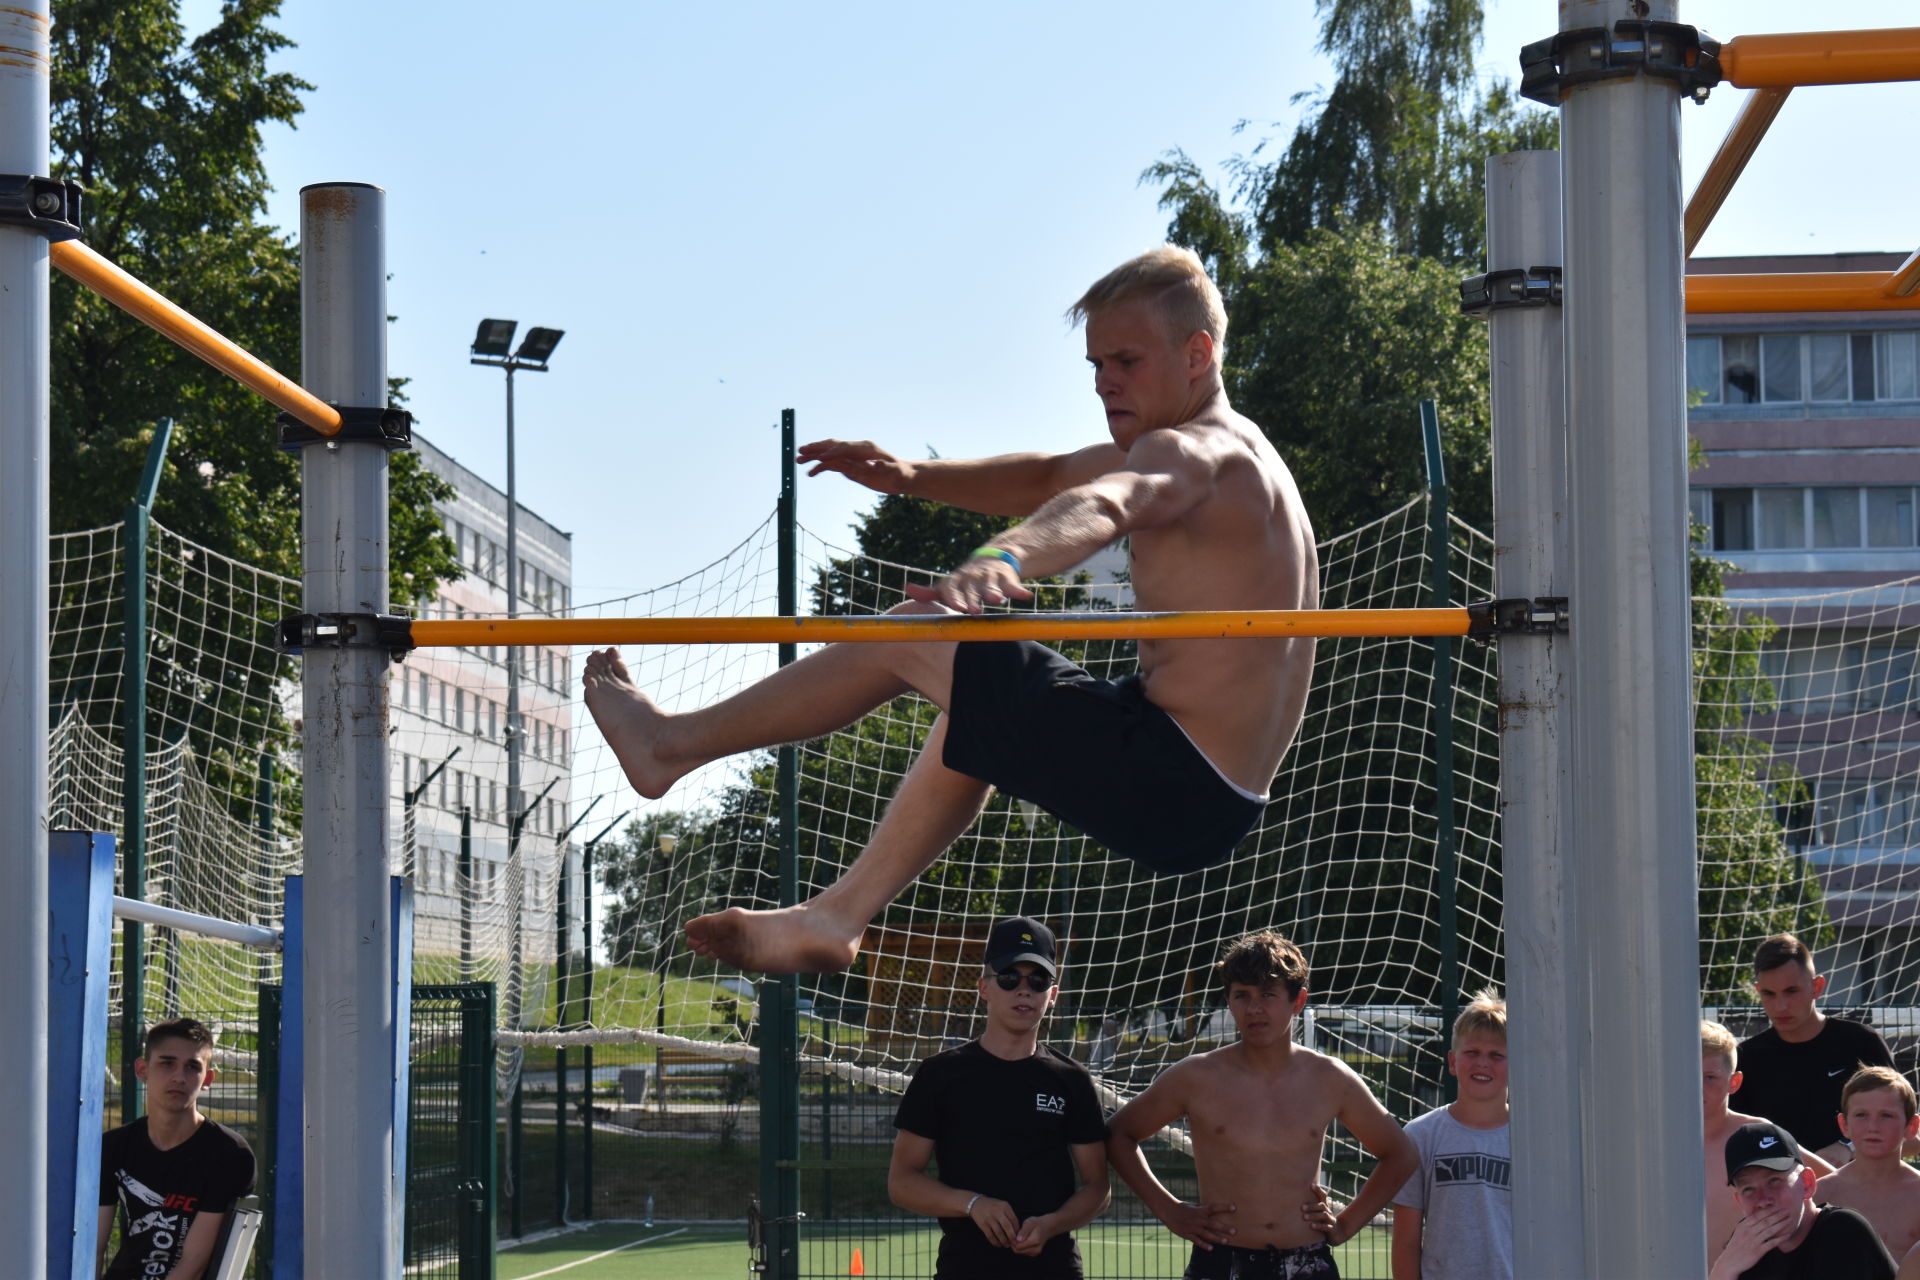 В Камских Полянах в День Молодежи состоялись соревнования по уличной гимнастике "Street Workout"